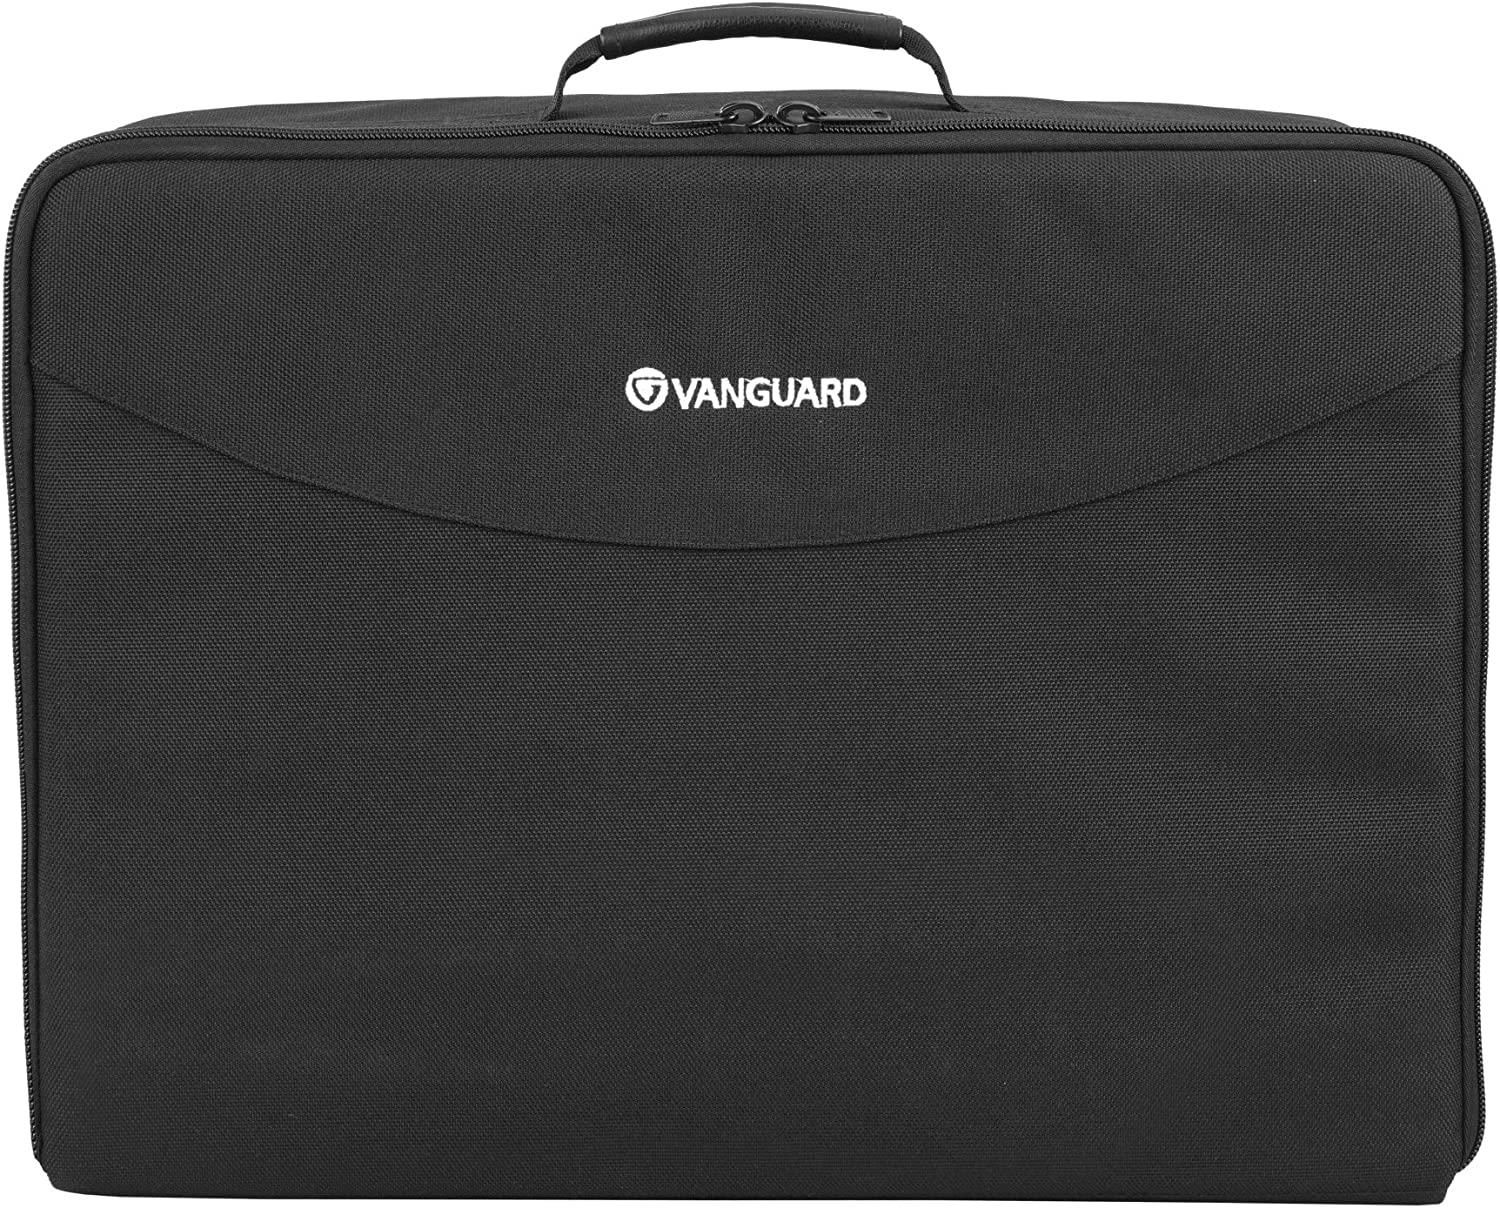 Vanguard Divider Bag 46 El Çantası